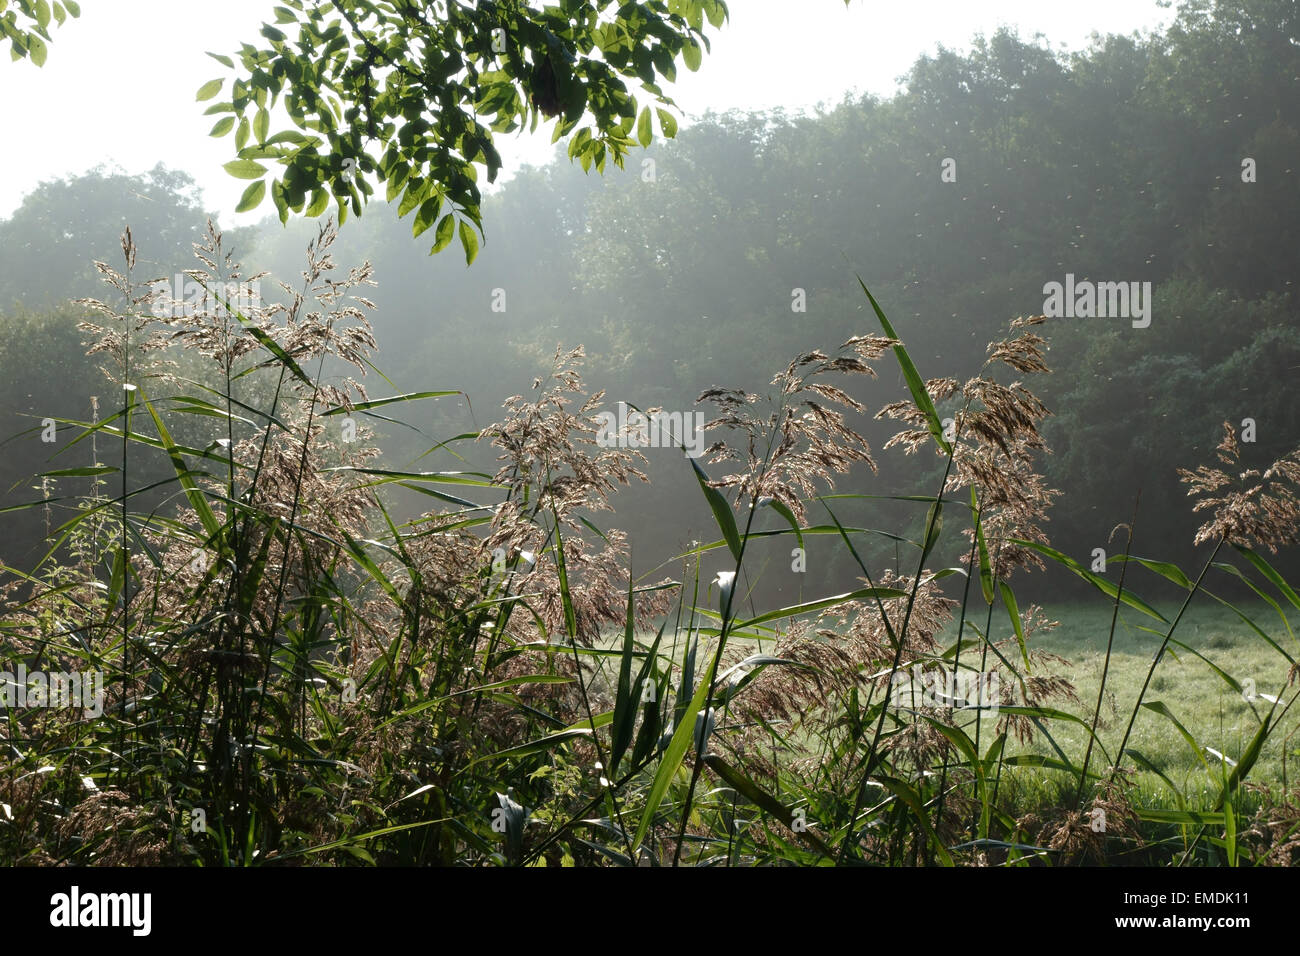 Gemeinsamen Reed, Fragmites Communis, blühen an den Ufern des Kanals Kennet & Avon an nebligen spät Sommermorgen Stockfoto